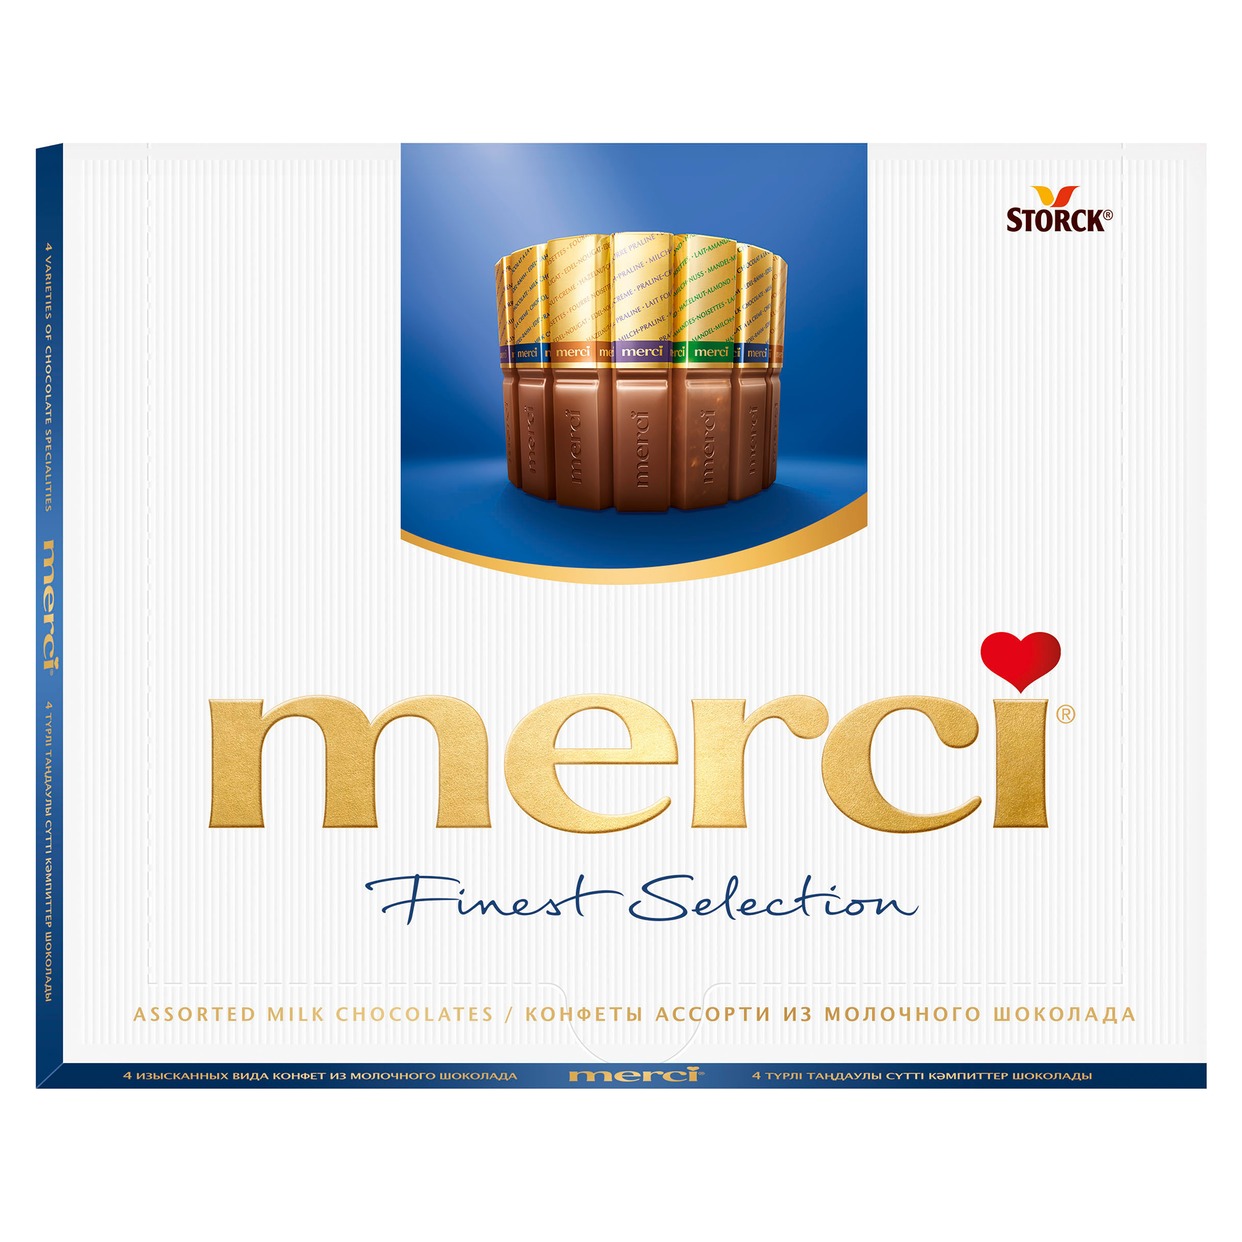 Конфеты из молочного шоколада, Merci, 250 г по акции в Пятерочке